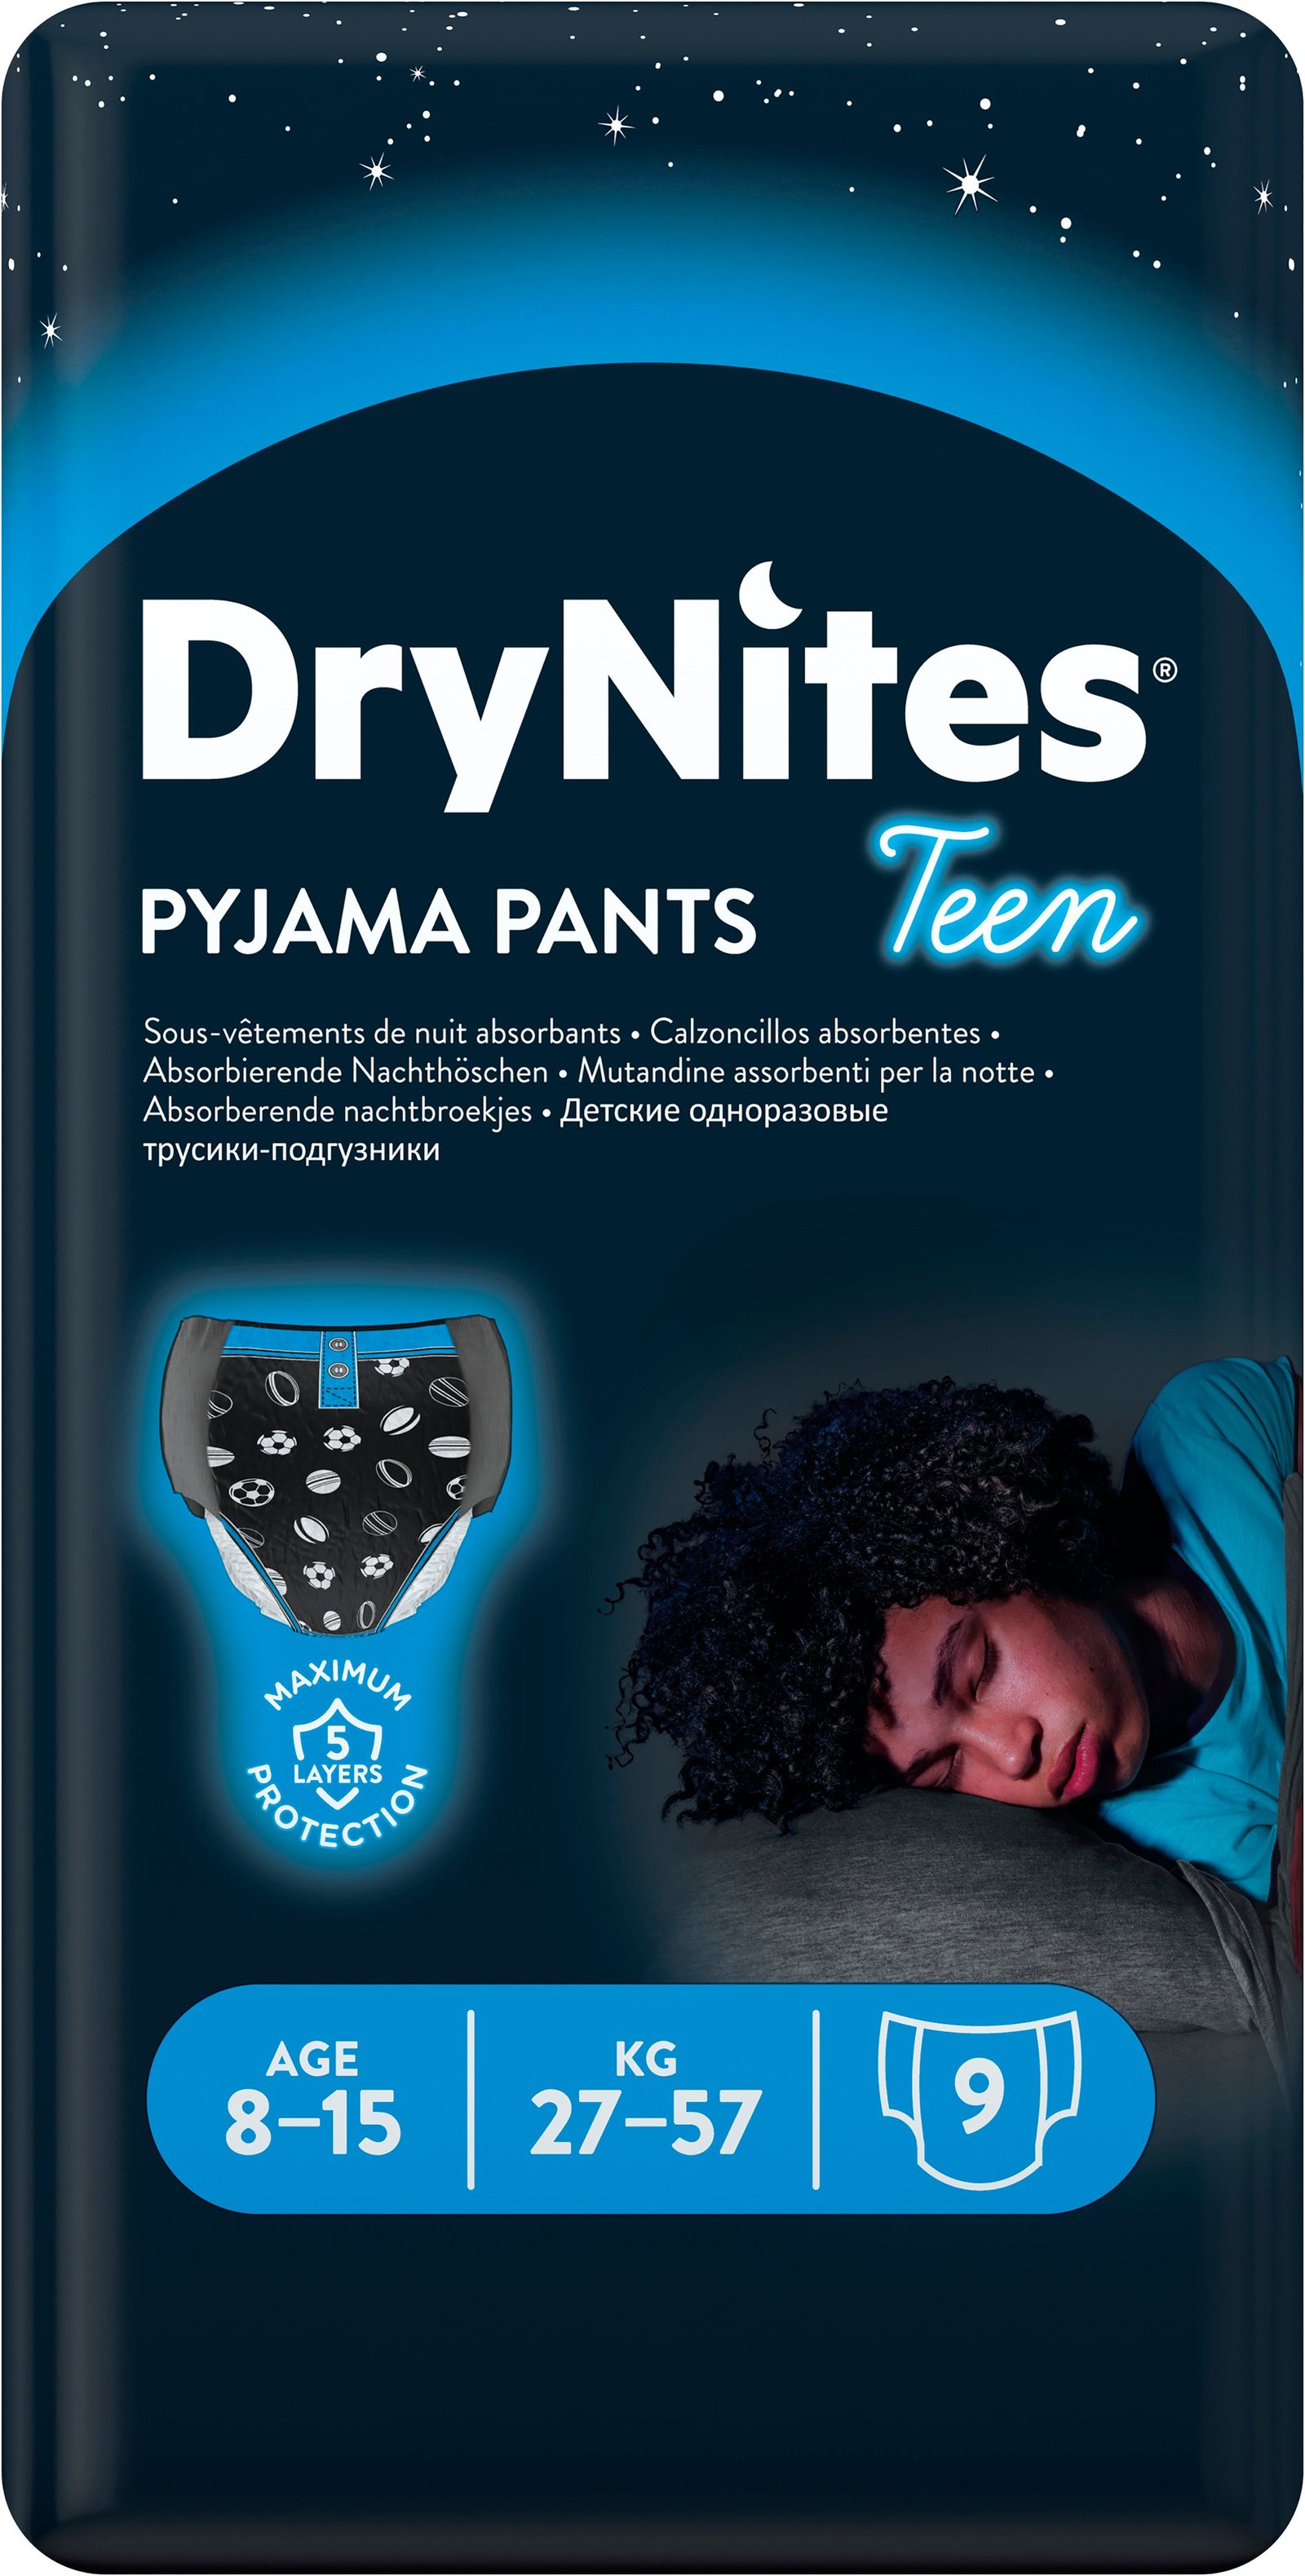 DryNites Nattblöja pojke, 8-15 år 9 st